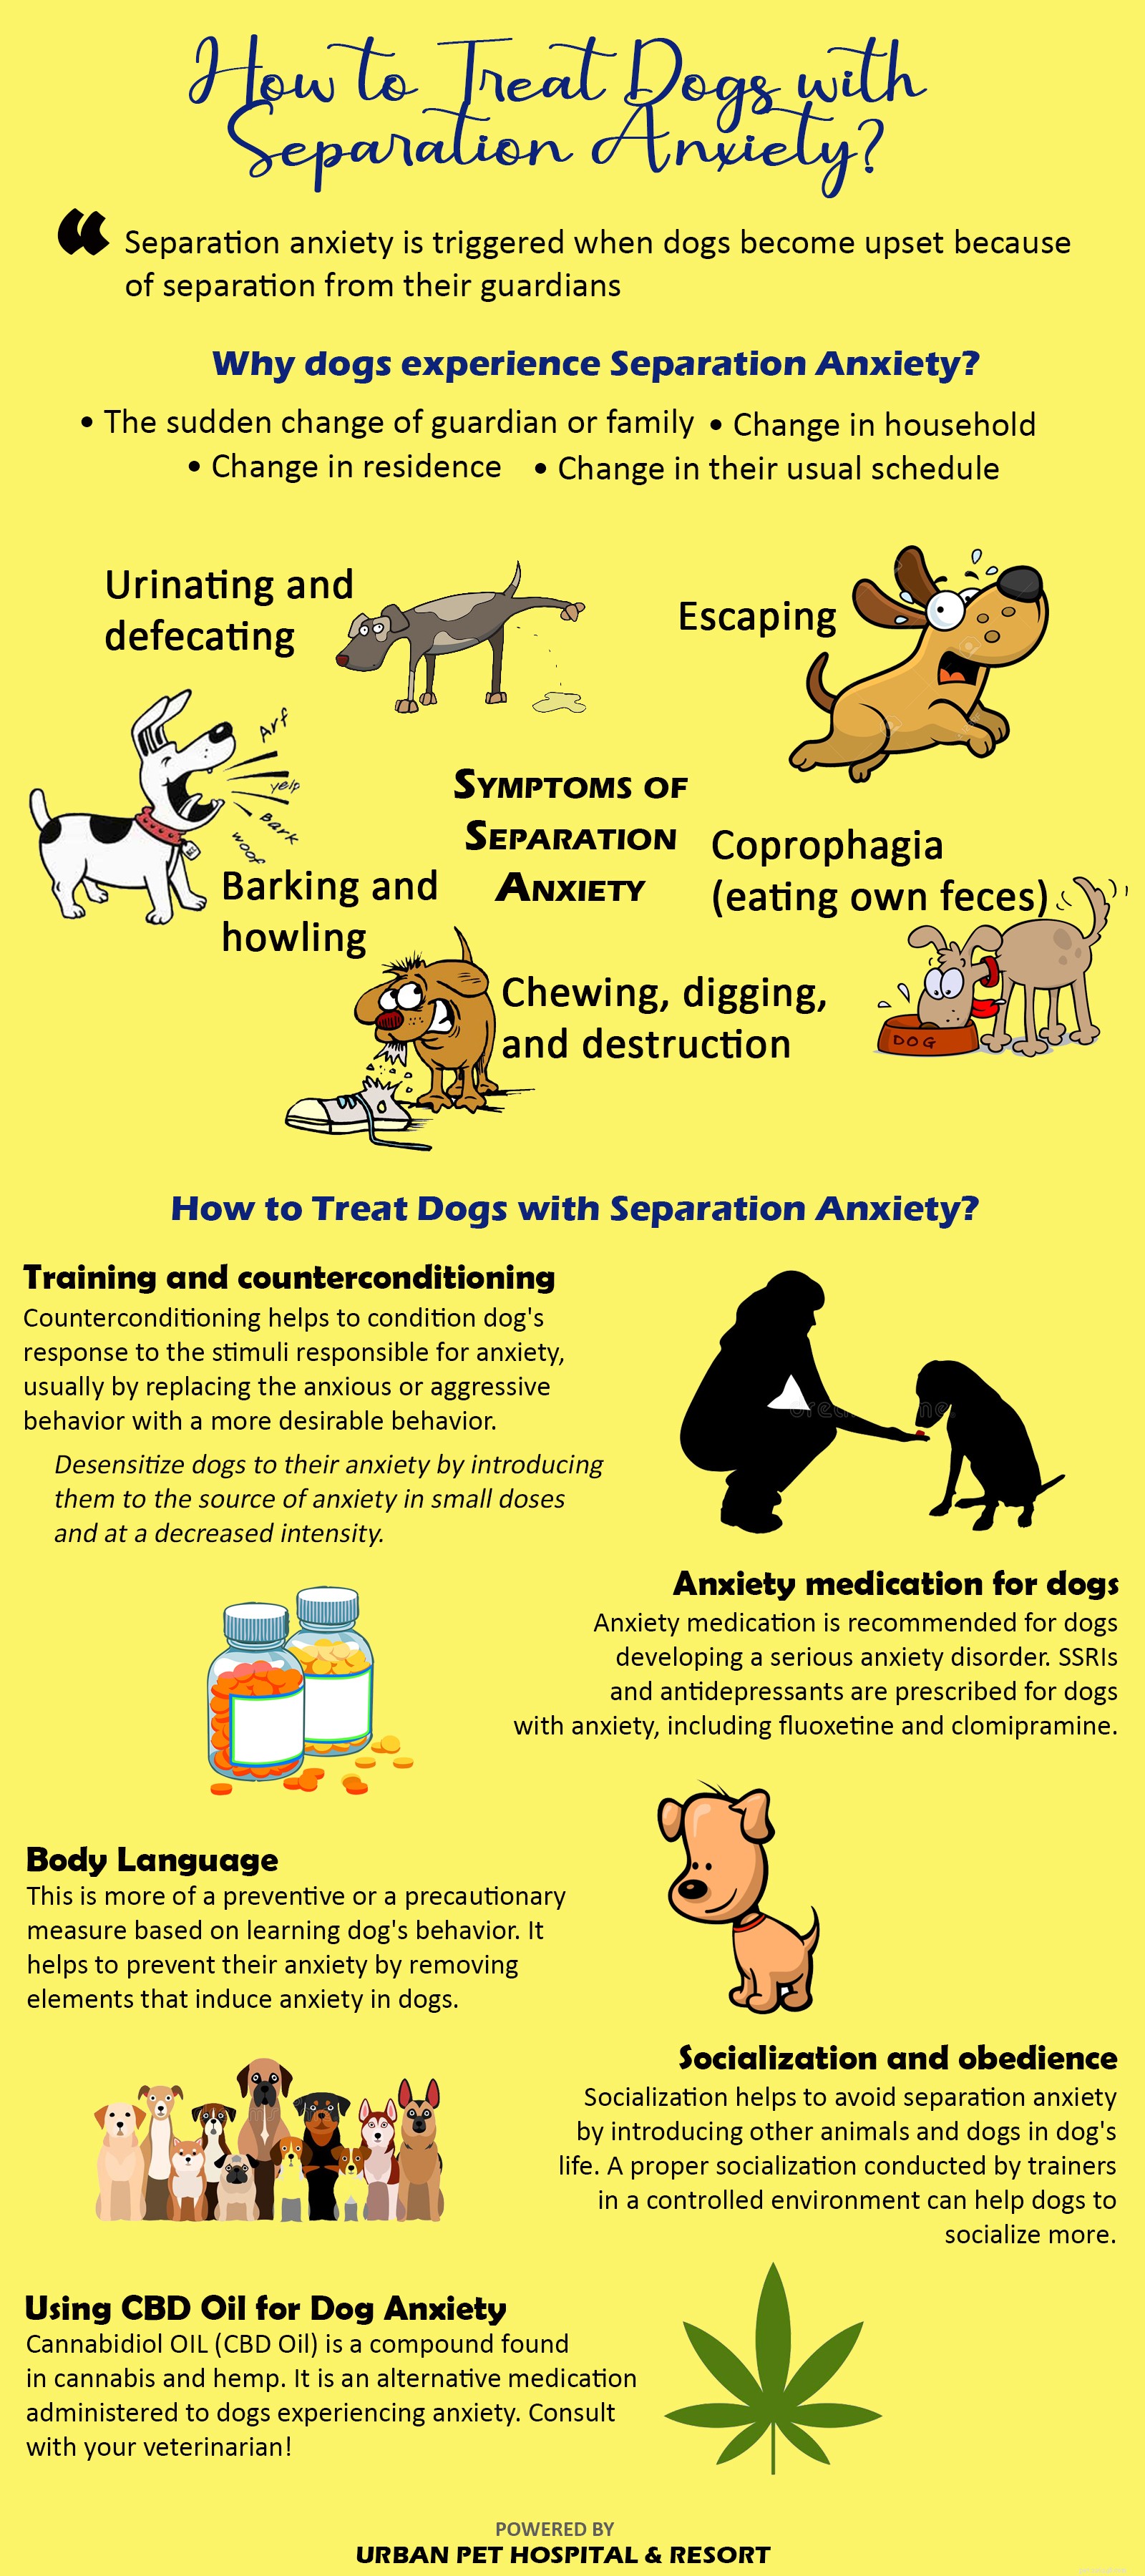 Aqui estão as 5 soluções para a ansiedade de separação do seu cão